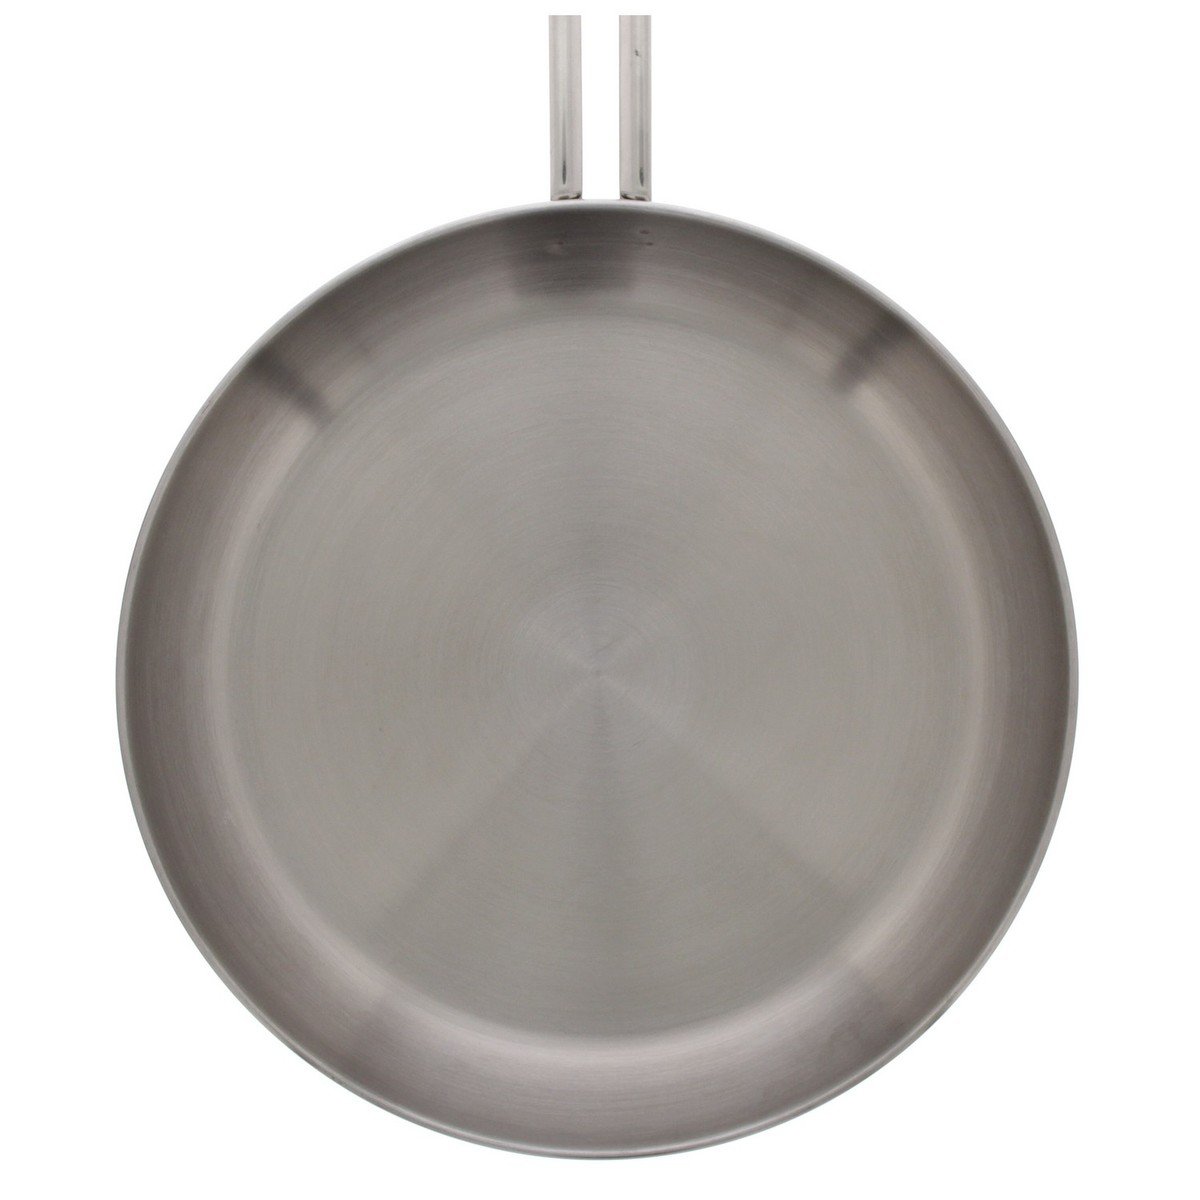 Prestige Infinity Stainless Steel Fry Pan, 18 cm, 77365